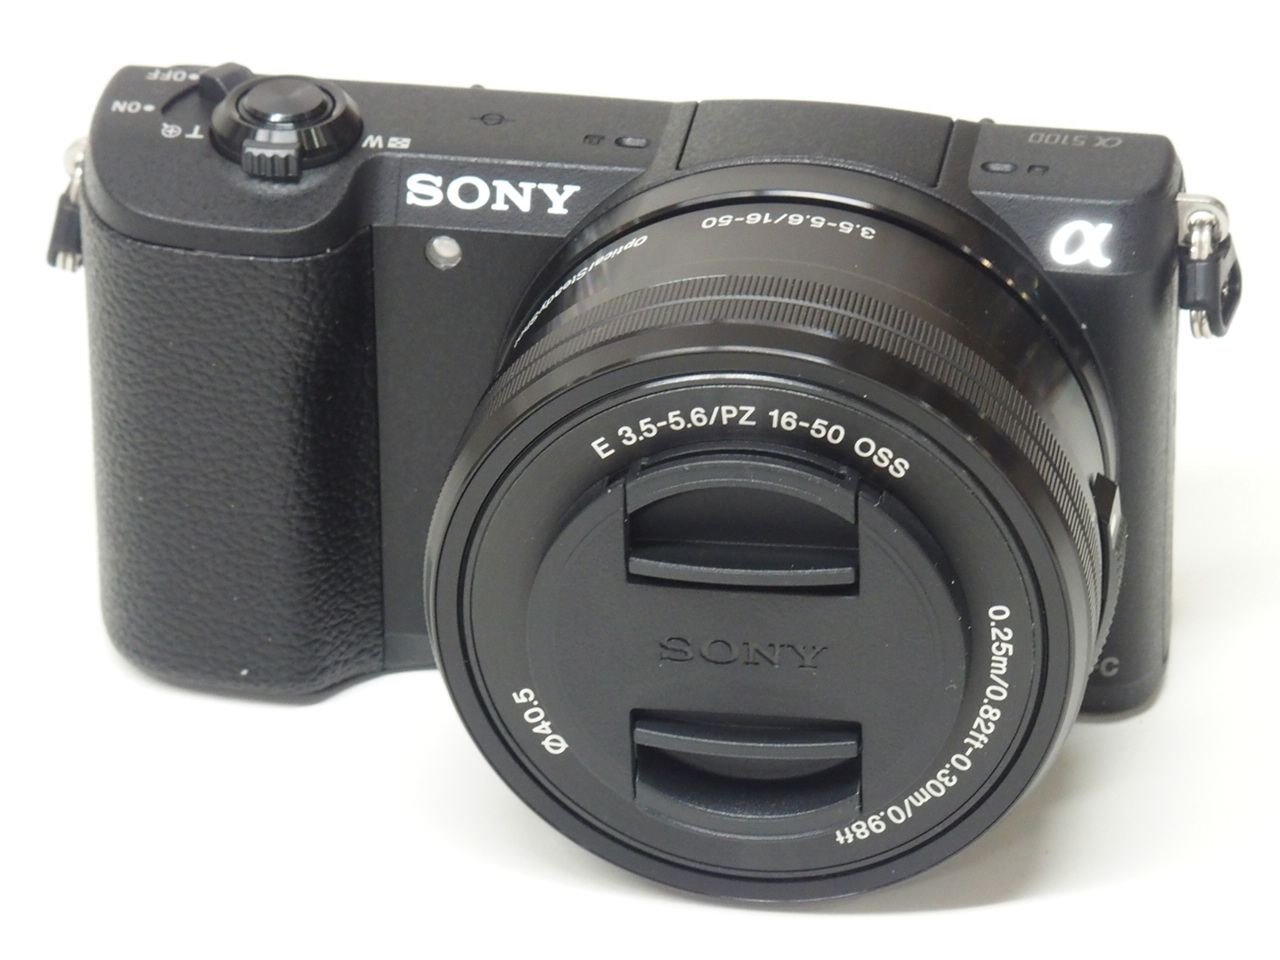 ソニー ミラーレスカメラ α5100 パワーズームレンズキット(ブラック) SONY ILCE-5100 + SELP1650(E PZ 16